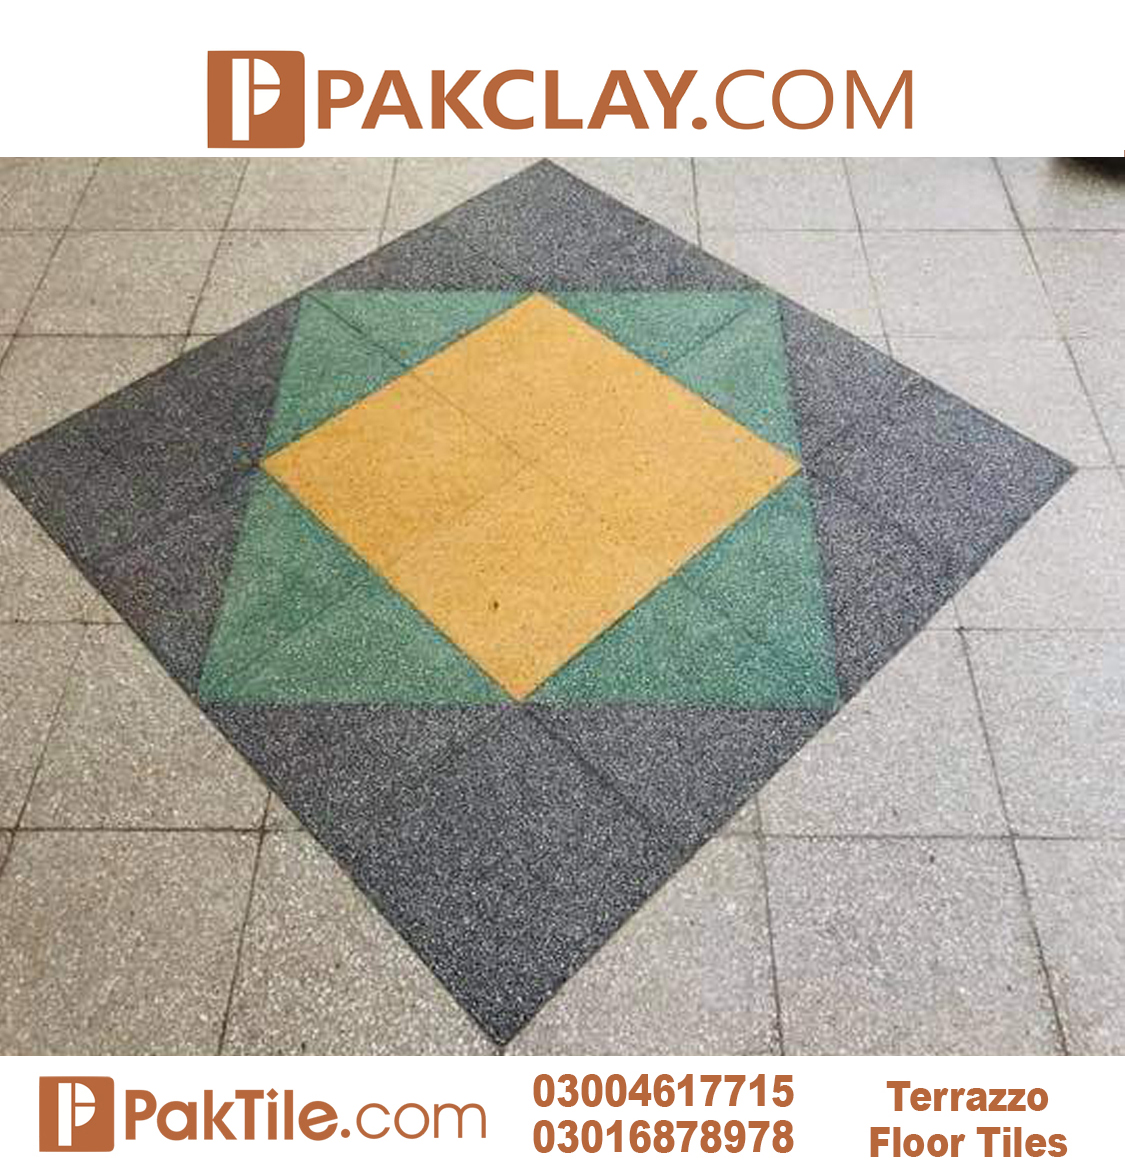 1 Best Terrazzo Flooring Tiles in Pakistan